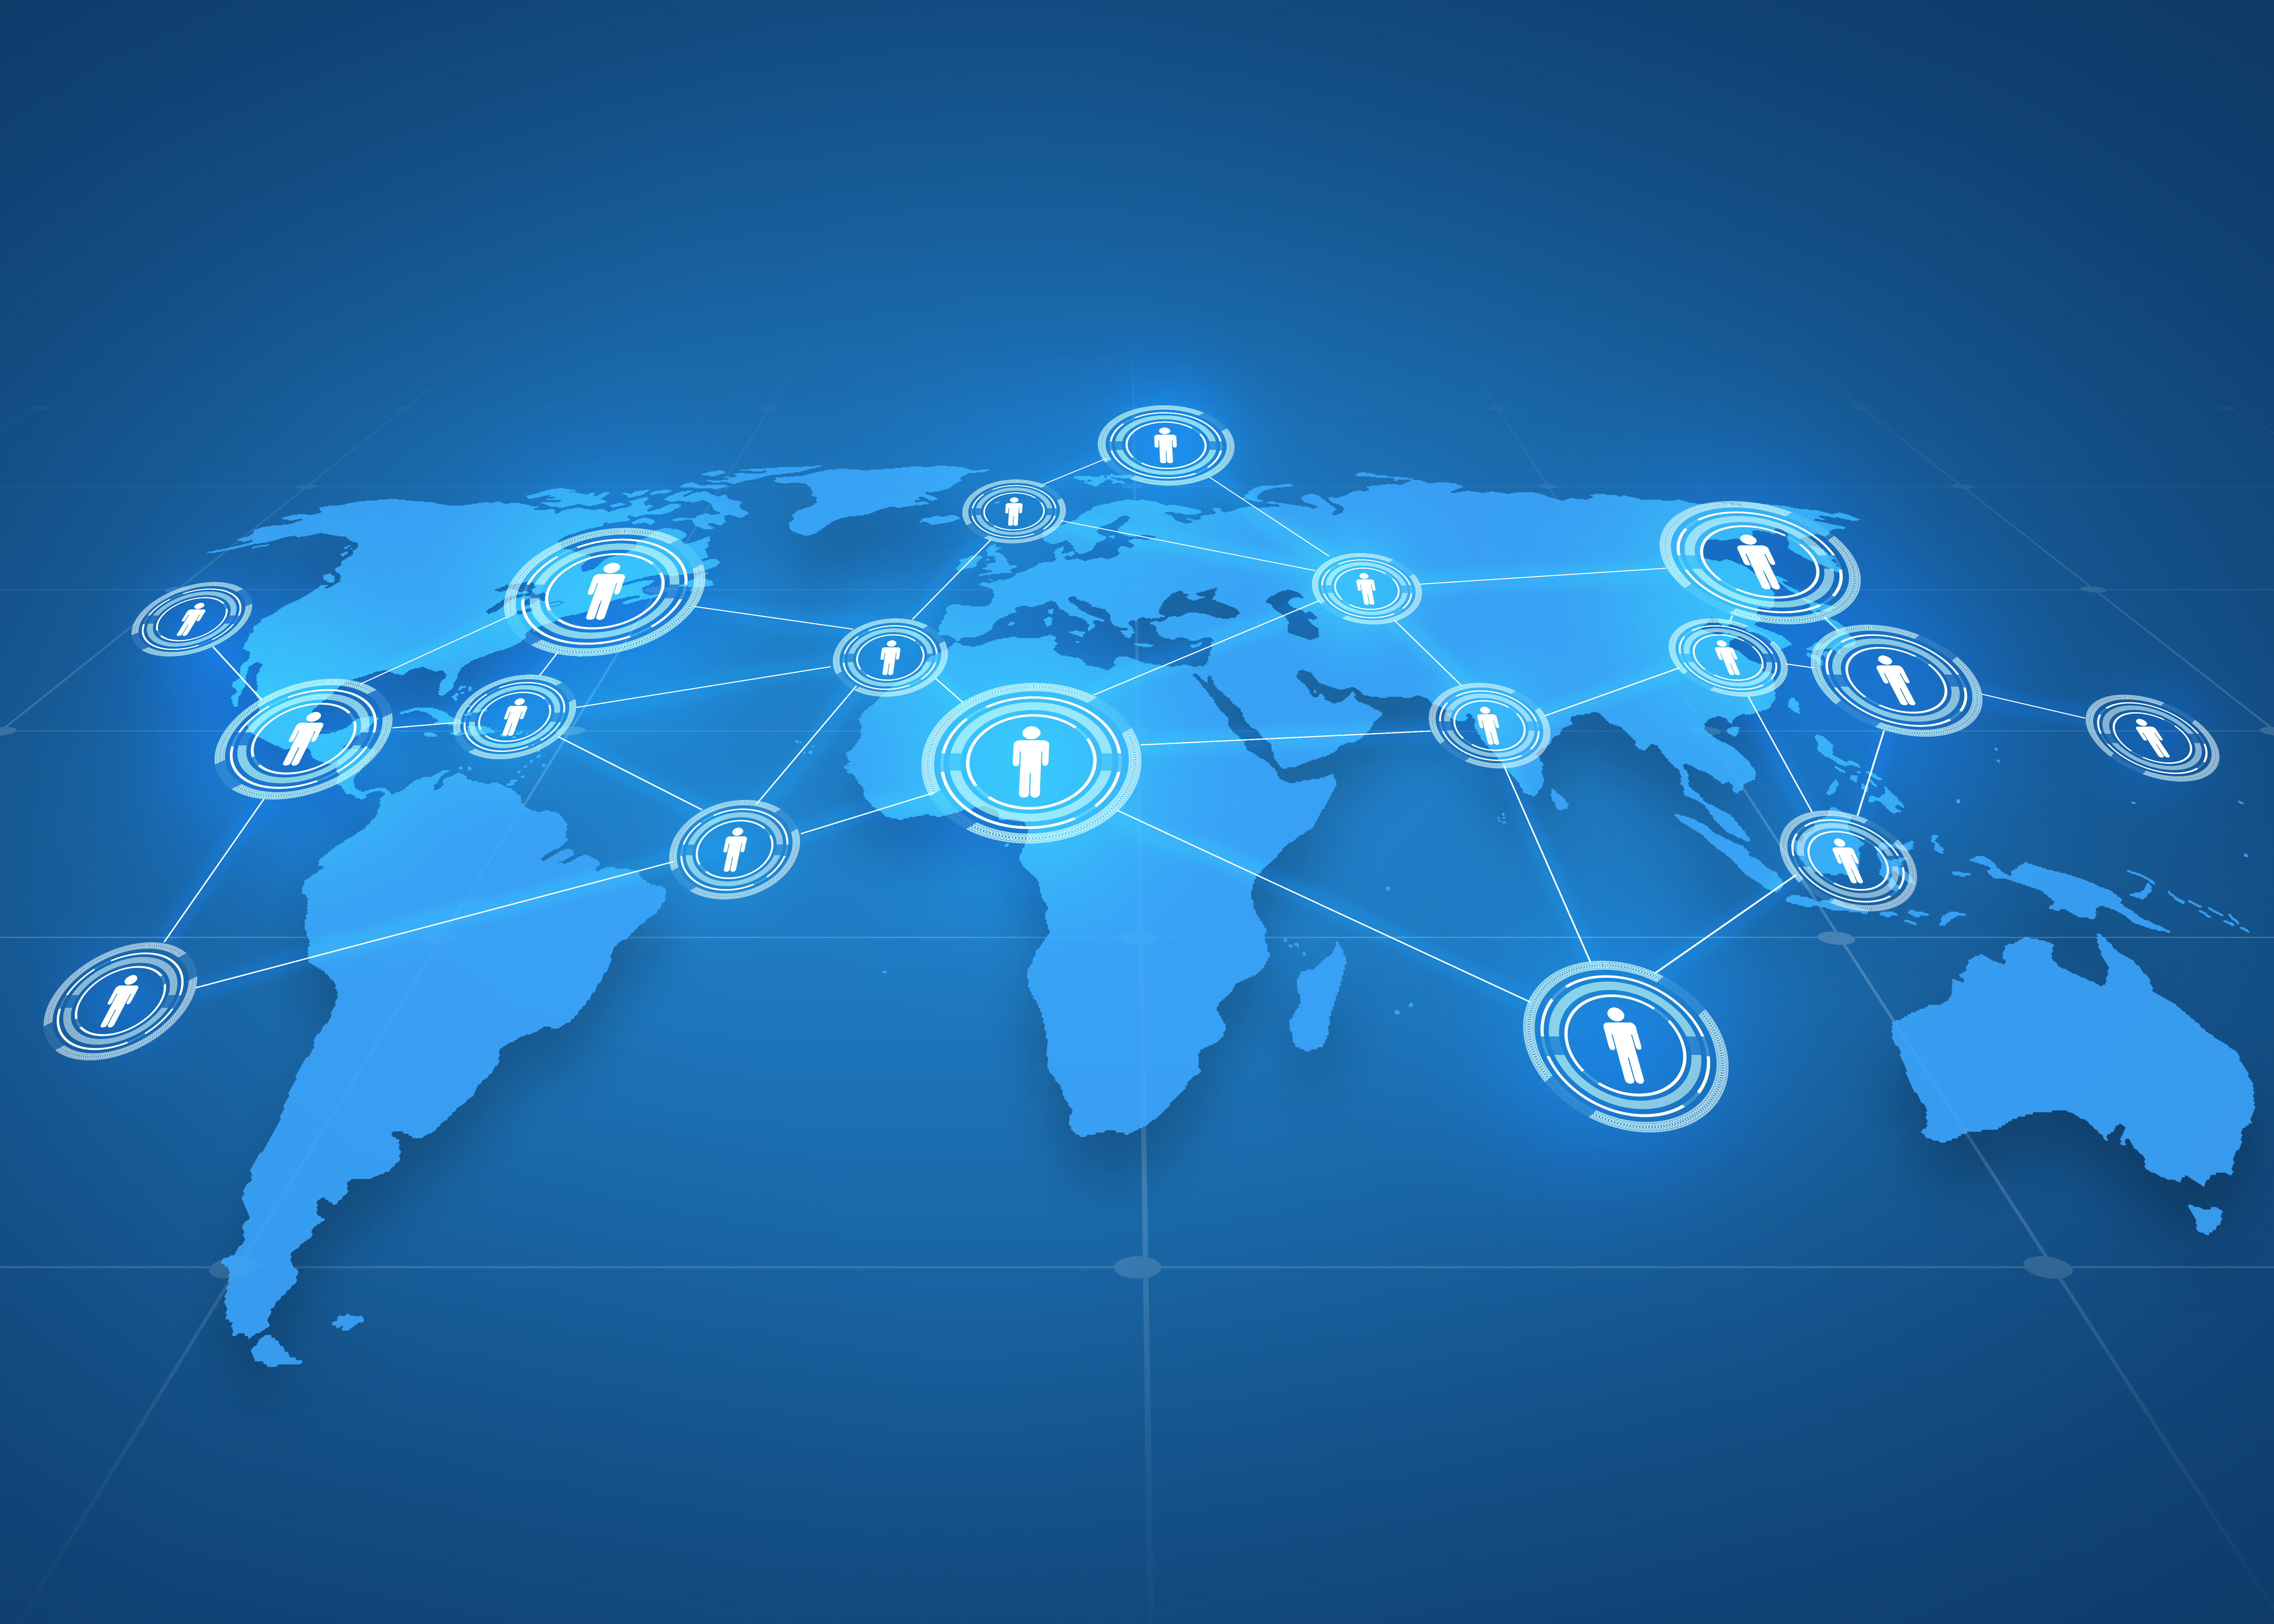 עסקים גלובליים, רשת חברתית, תקשורת המונים וטכנולוגיה - הקרנת מפת עולם עם אייקוני אנשים על רקע כחול